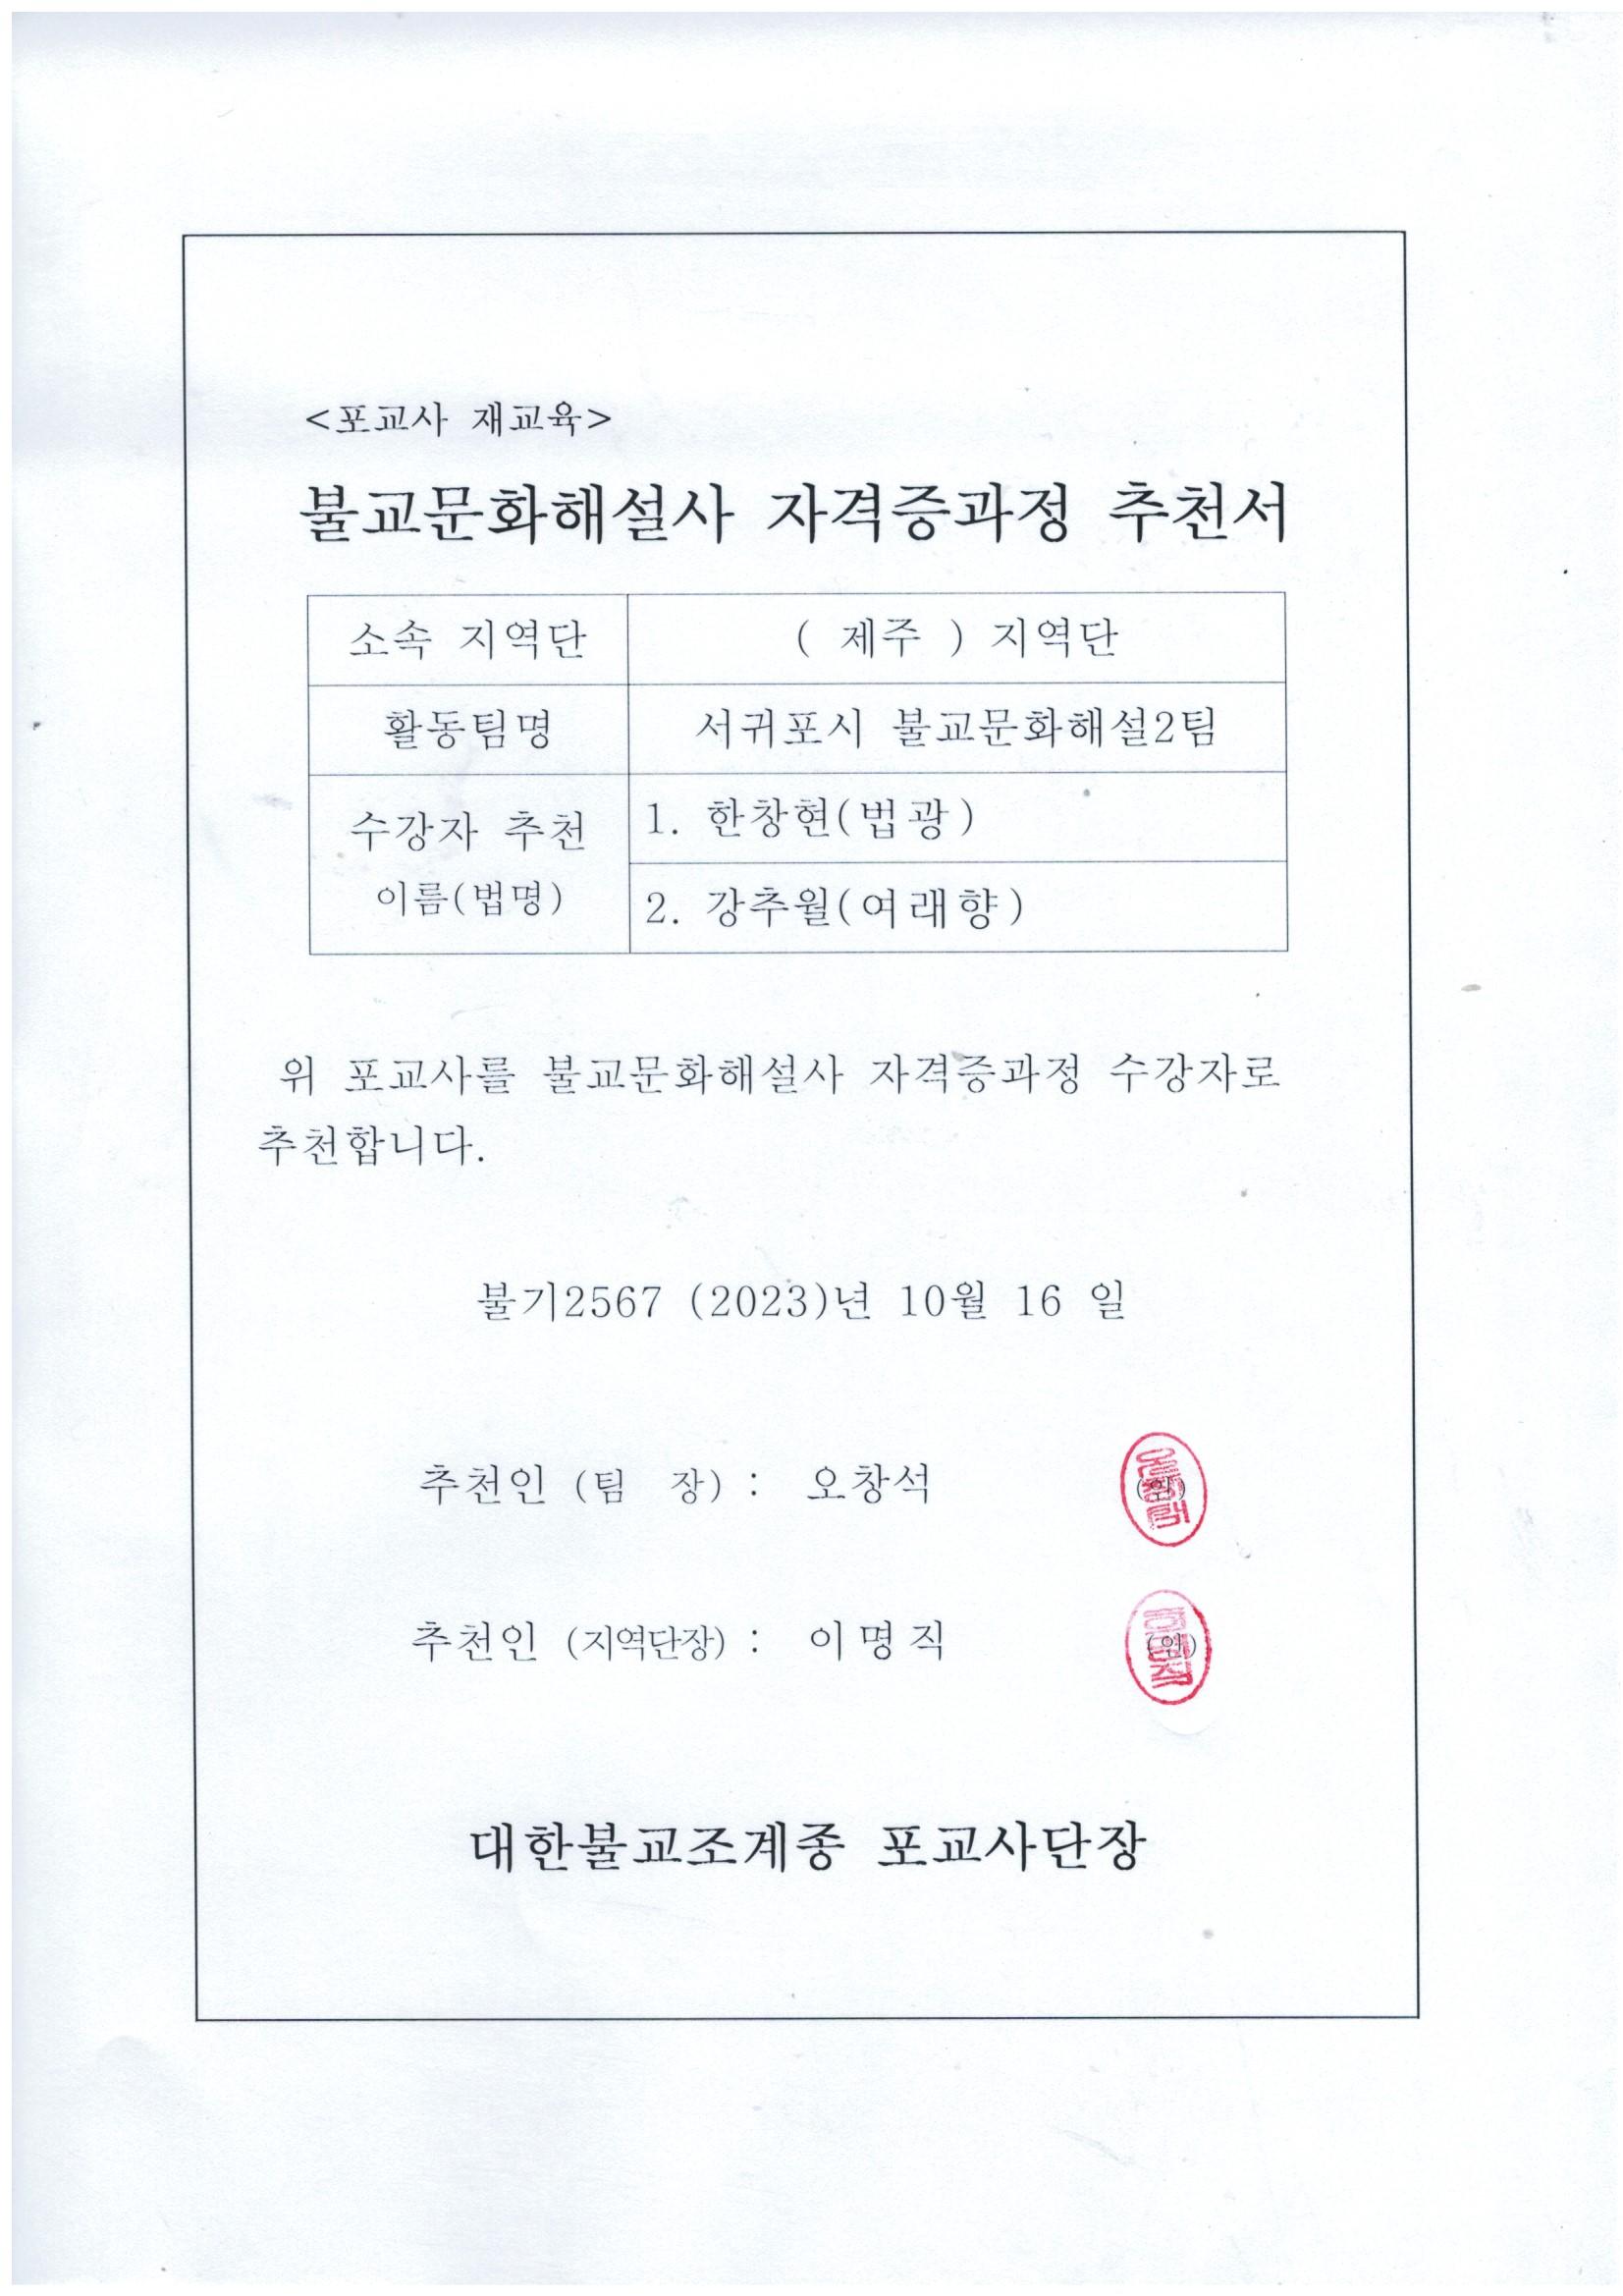 불교문화자격증추천서-서귀포(2).jpg